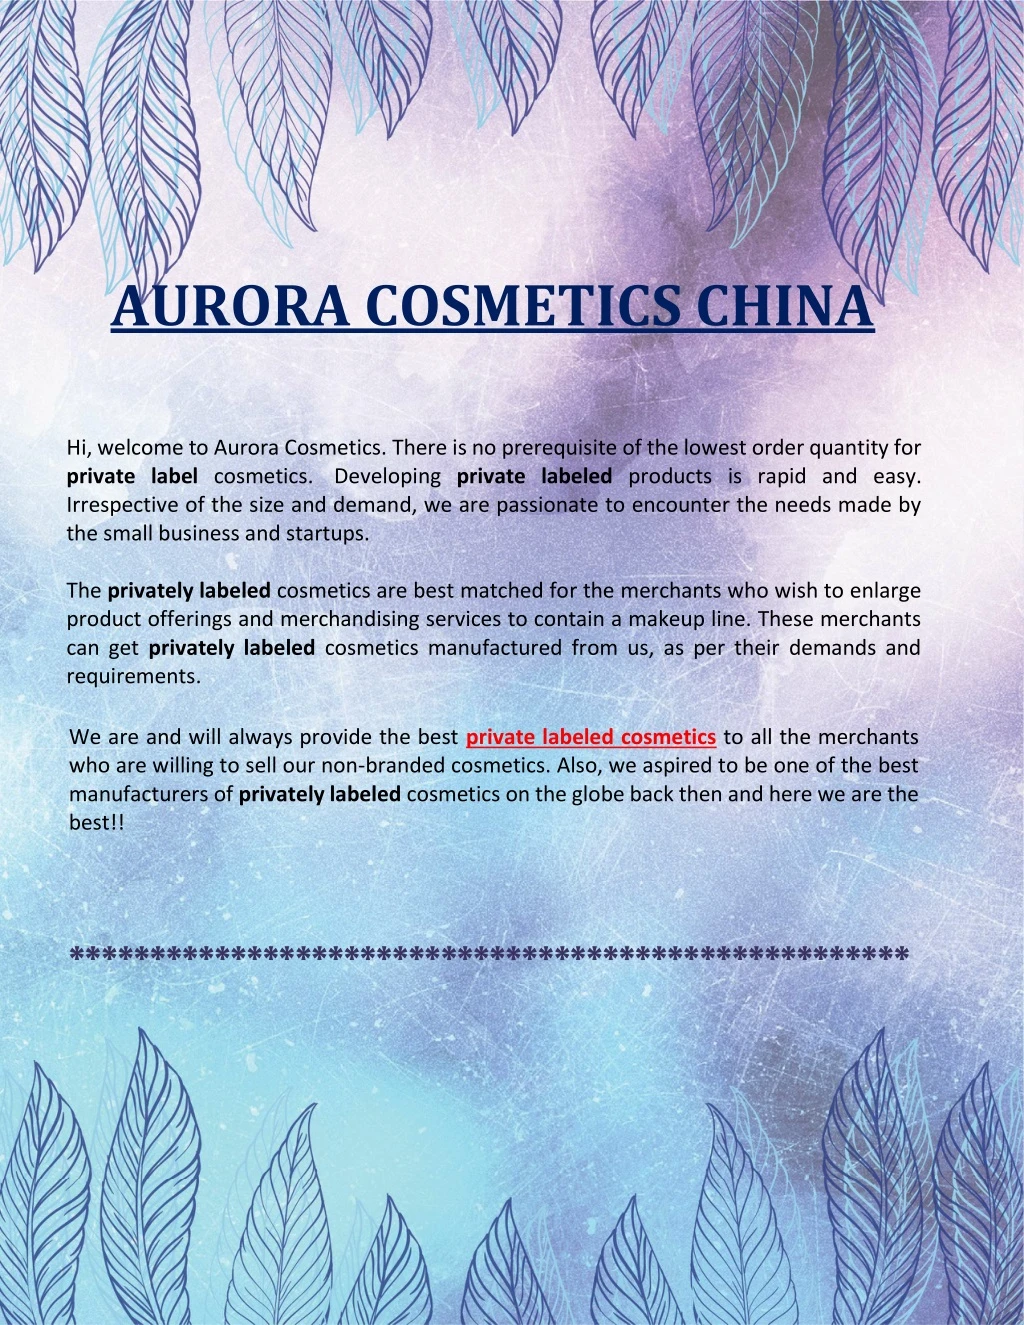 aurora cosmetics china